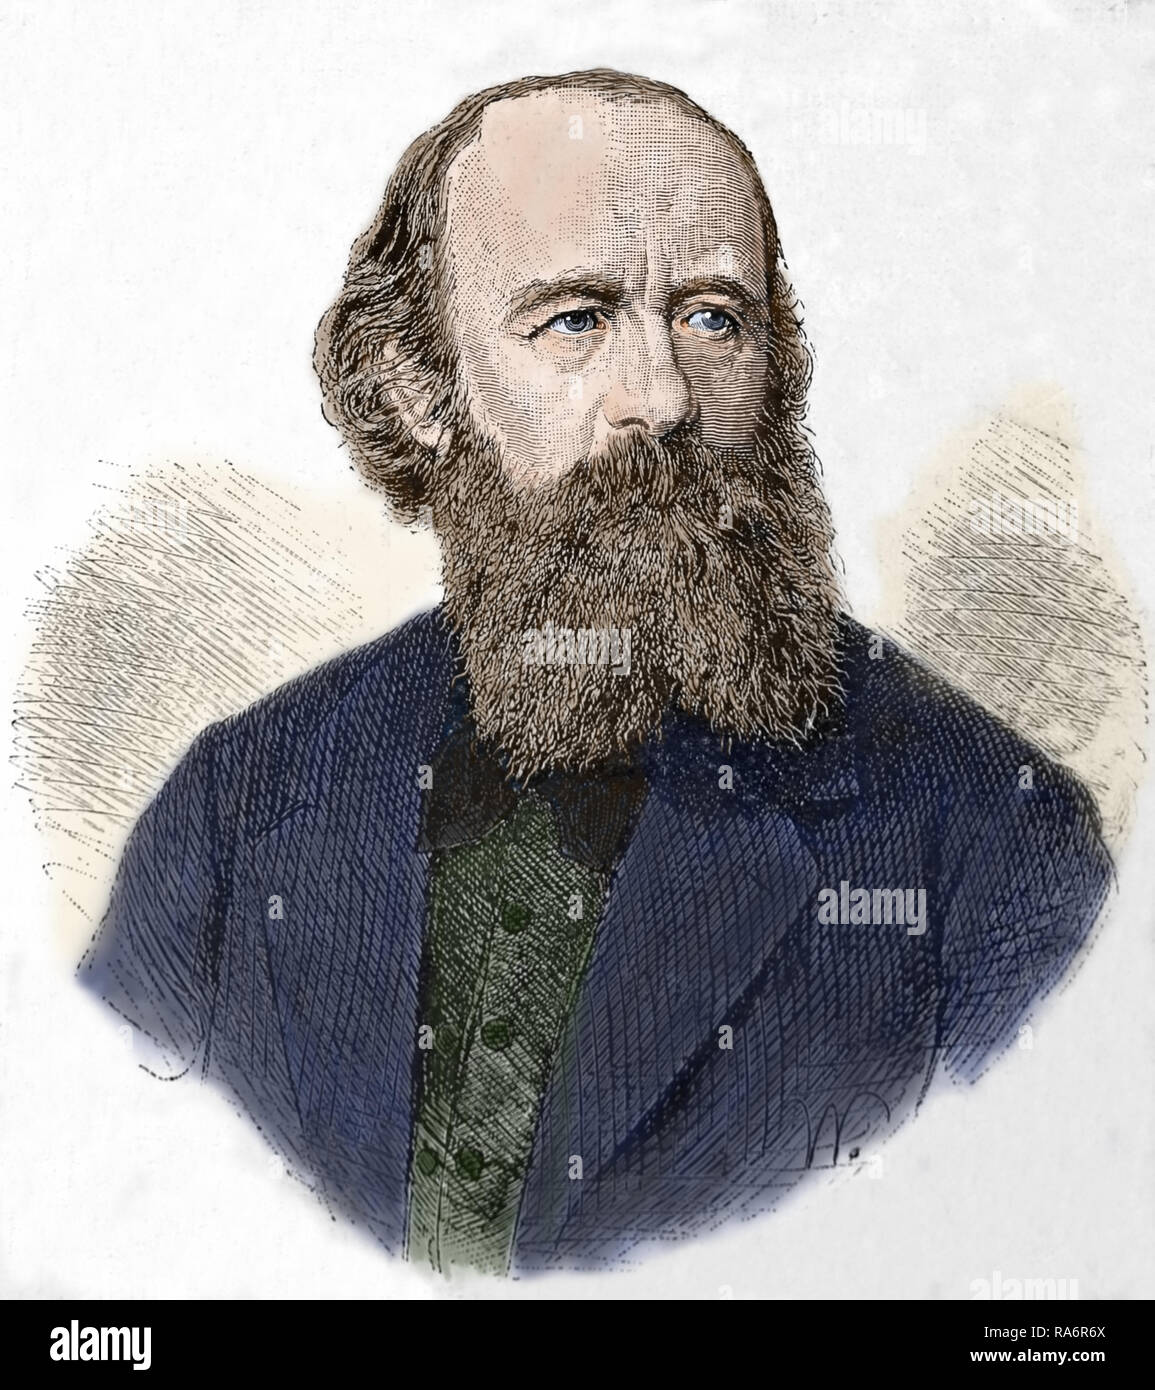 Johannes Schilling (1828-1910) sculpteur allemand. Portrait, gravure du xixe siècle. Plus tard la couleur. Banque D'Images